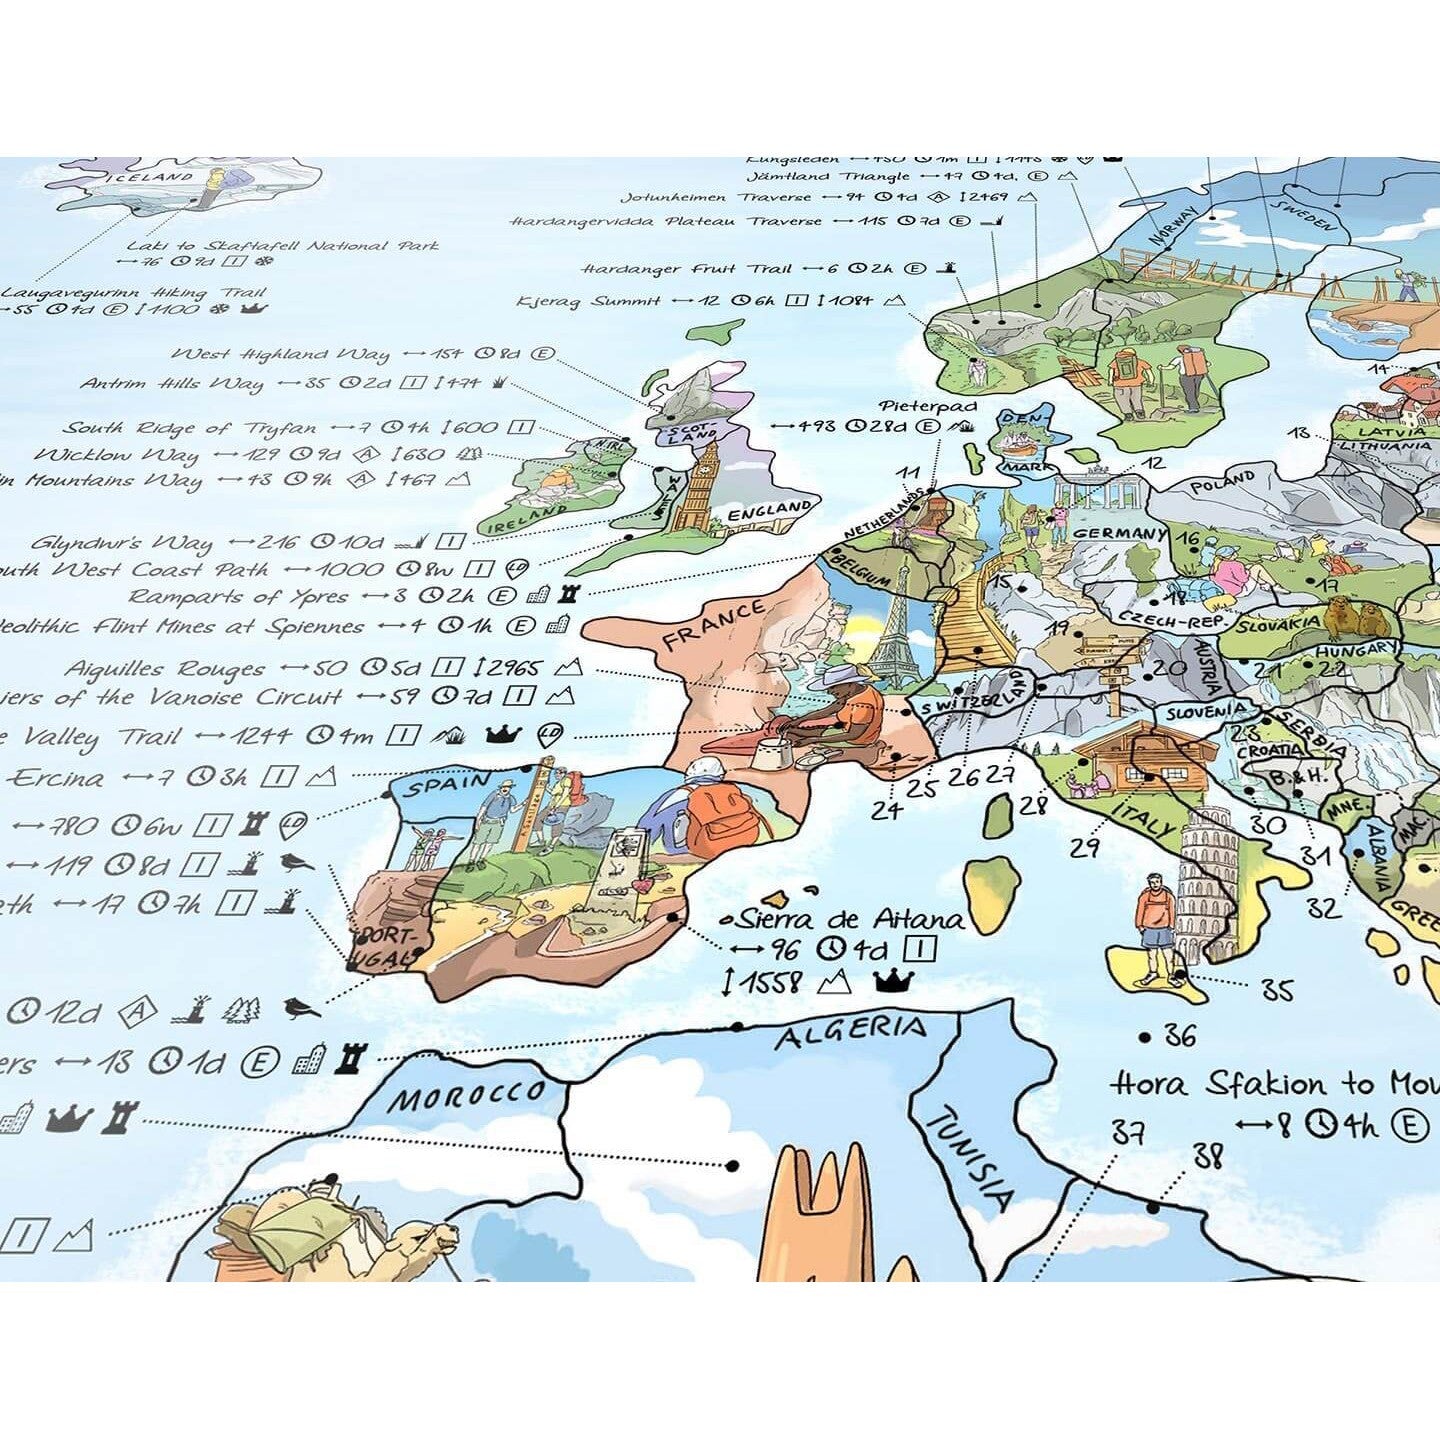 Awesome Maps - Póster del mapa mundial Mapa de senderismo reescribible